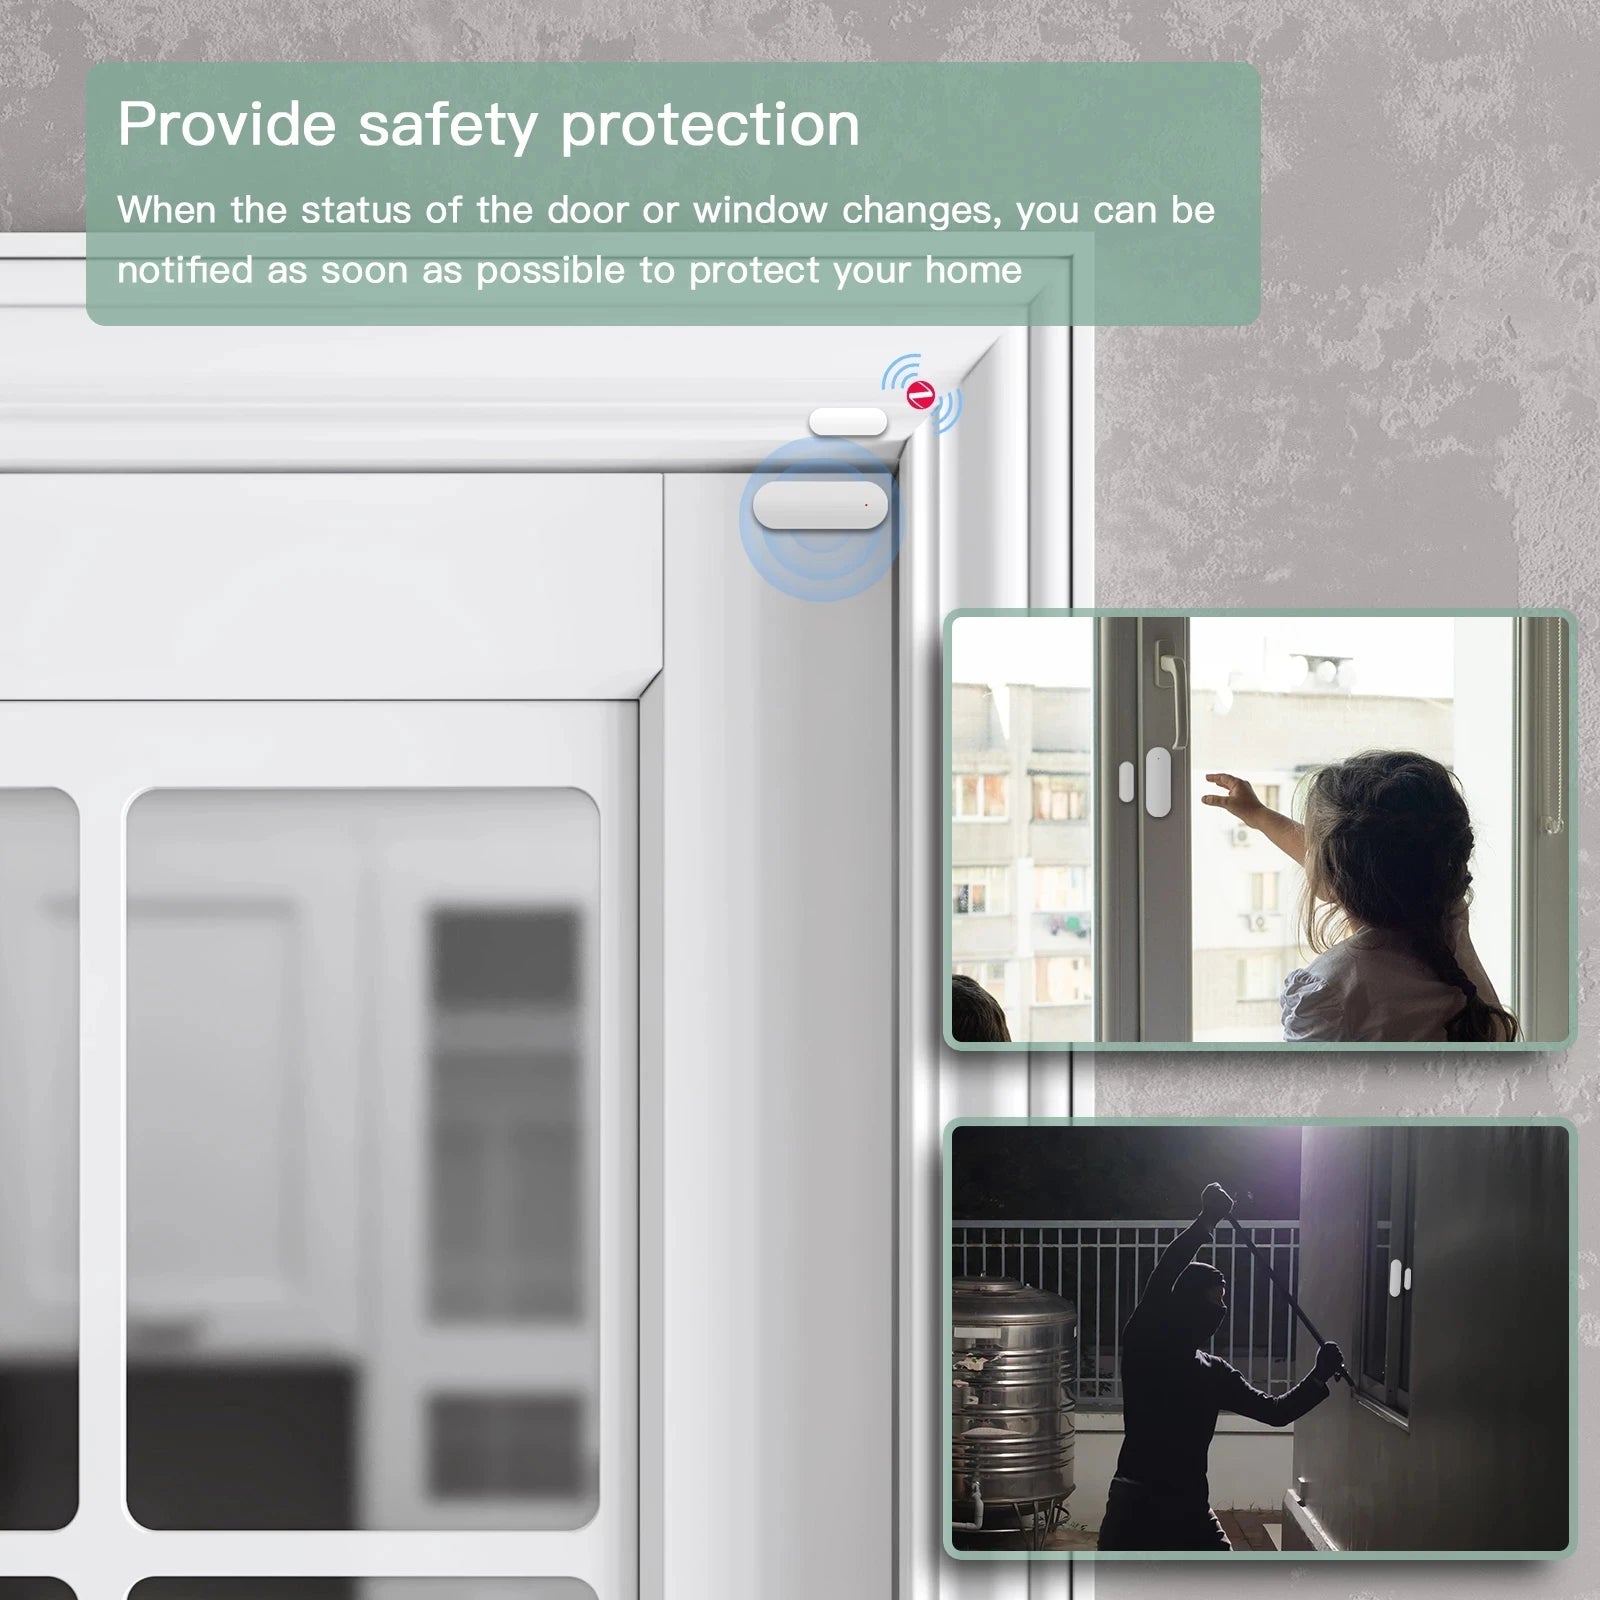 Bseed Plastic Smart Zigbee Home Door Windows Security Sensor